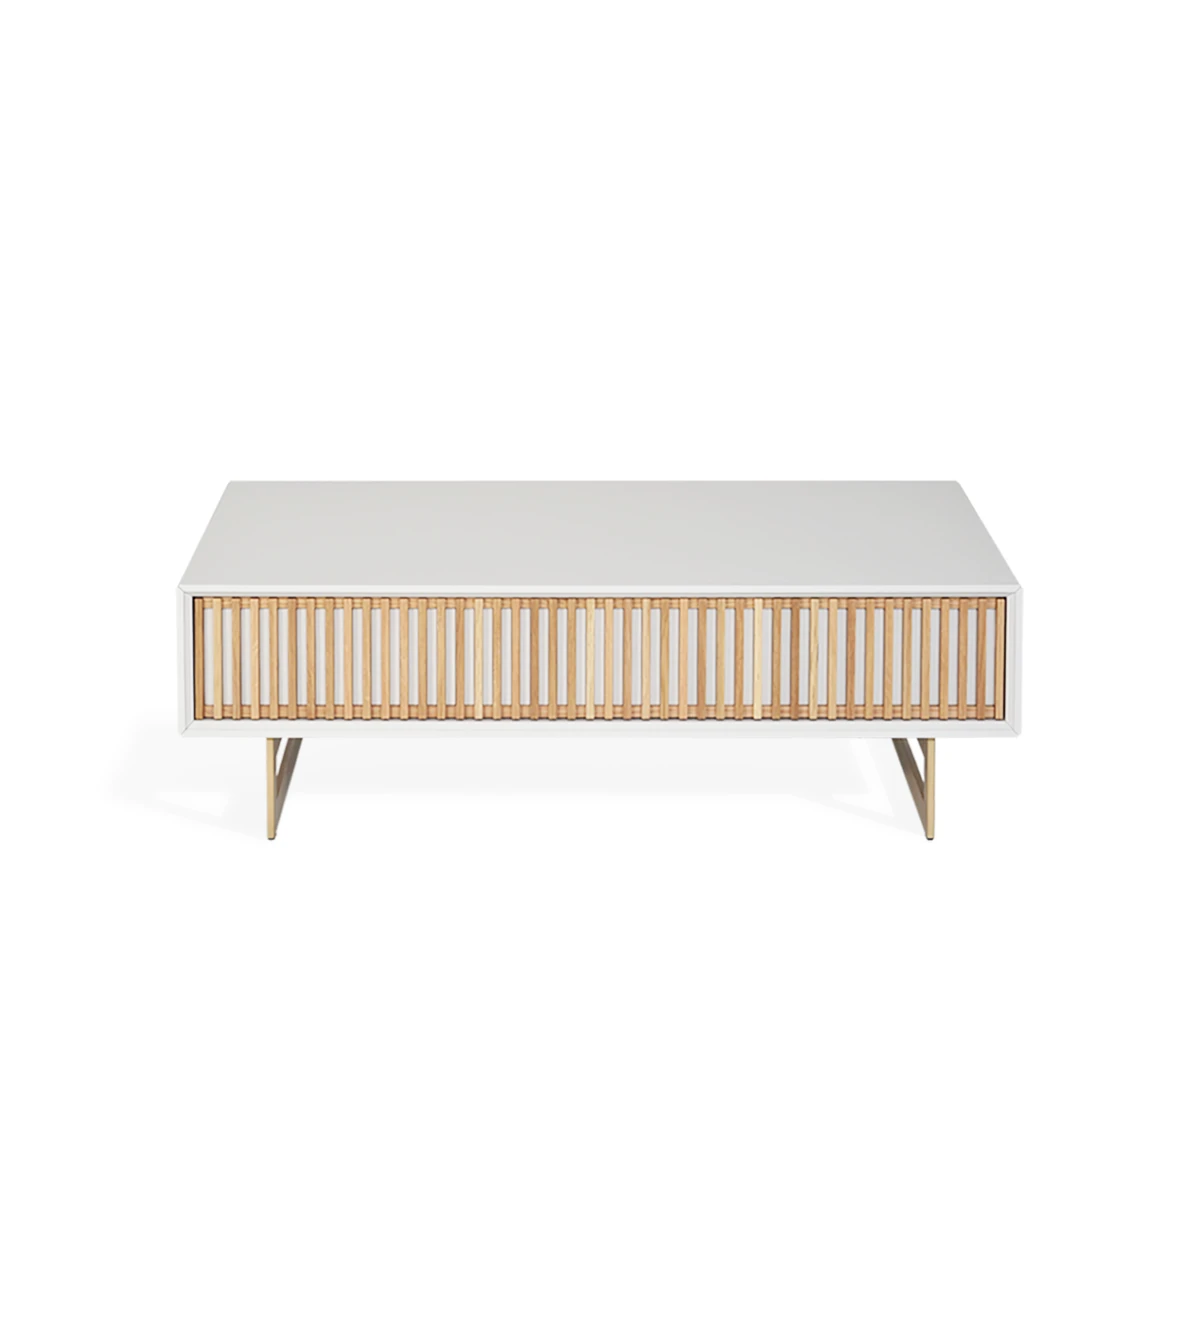 Table basse rectangulaire avec 1 tiroir en chêne naturel, structure laquée perle et pieds en métal laqué doré.